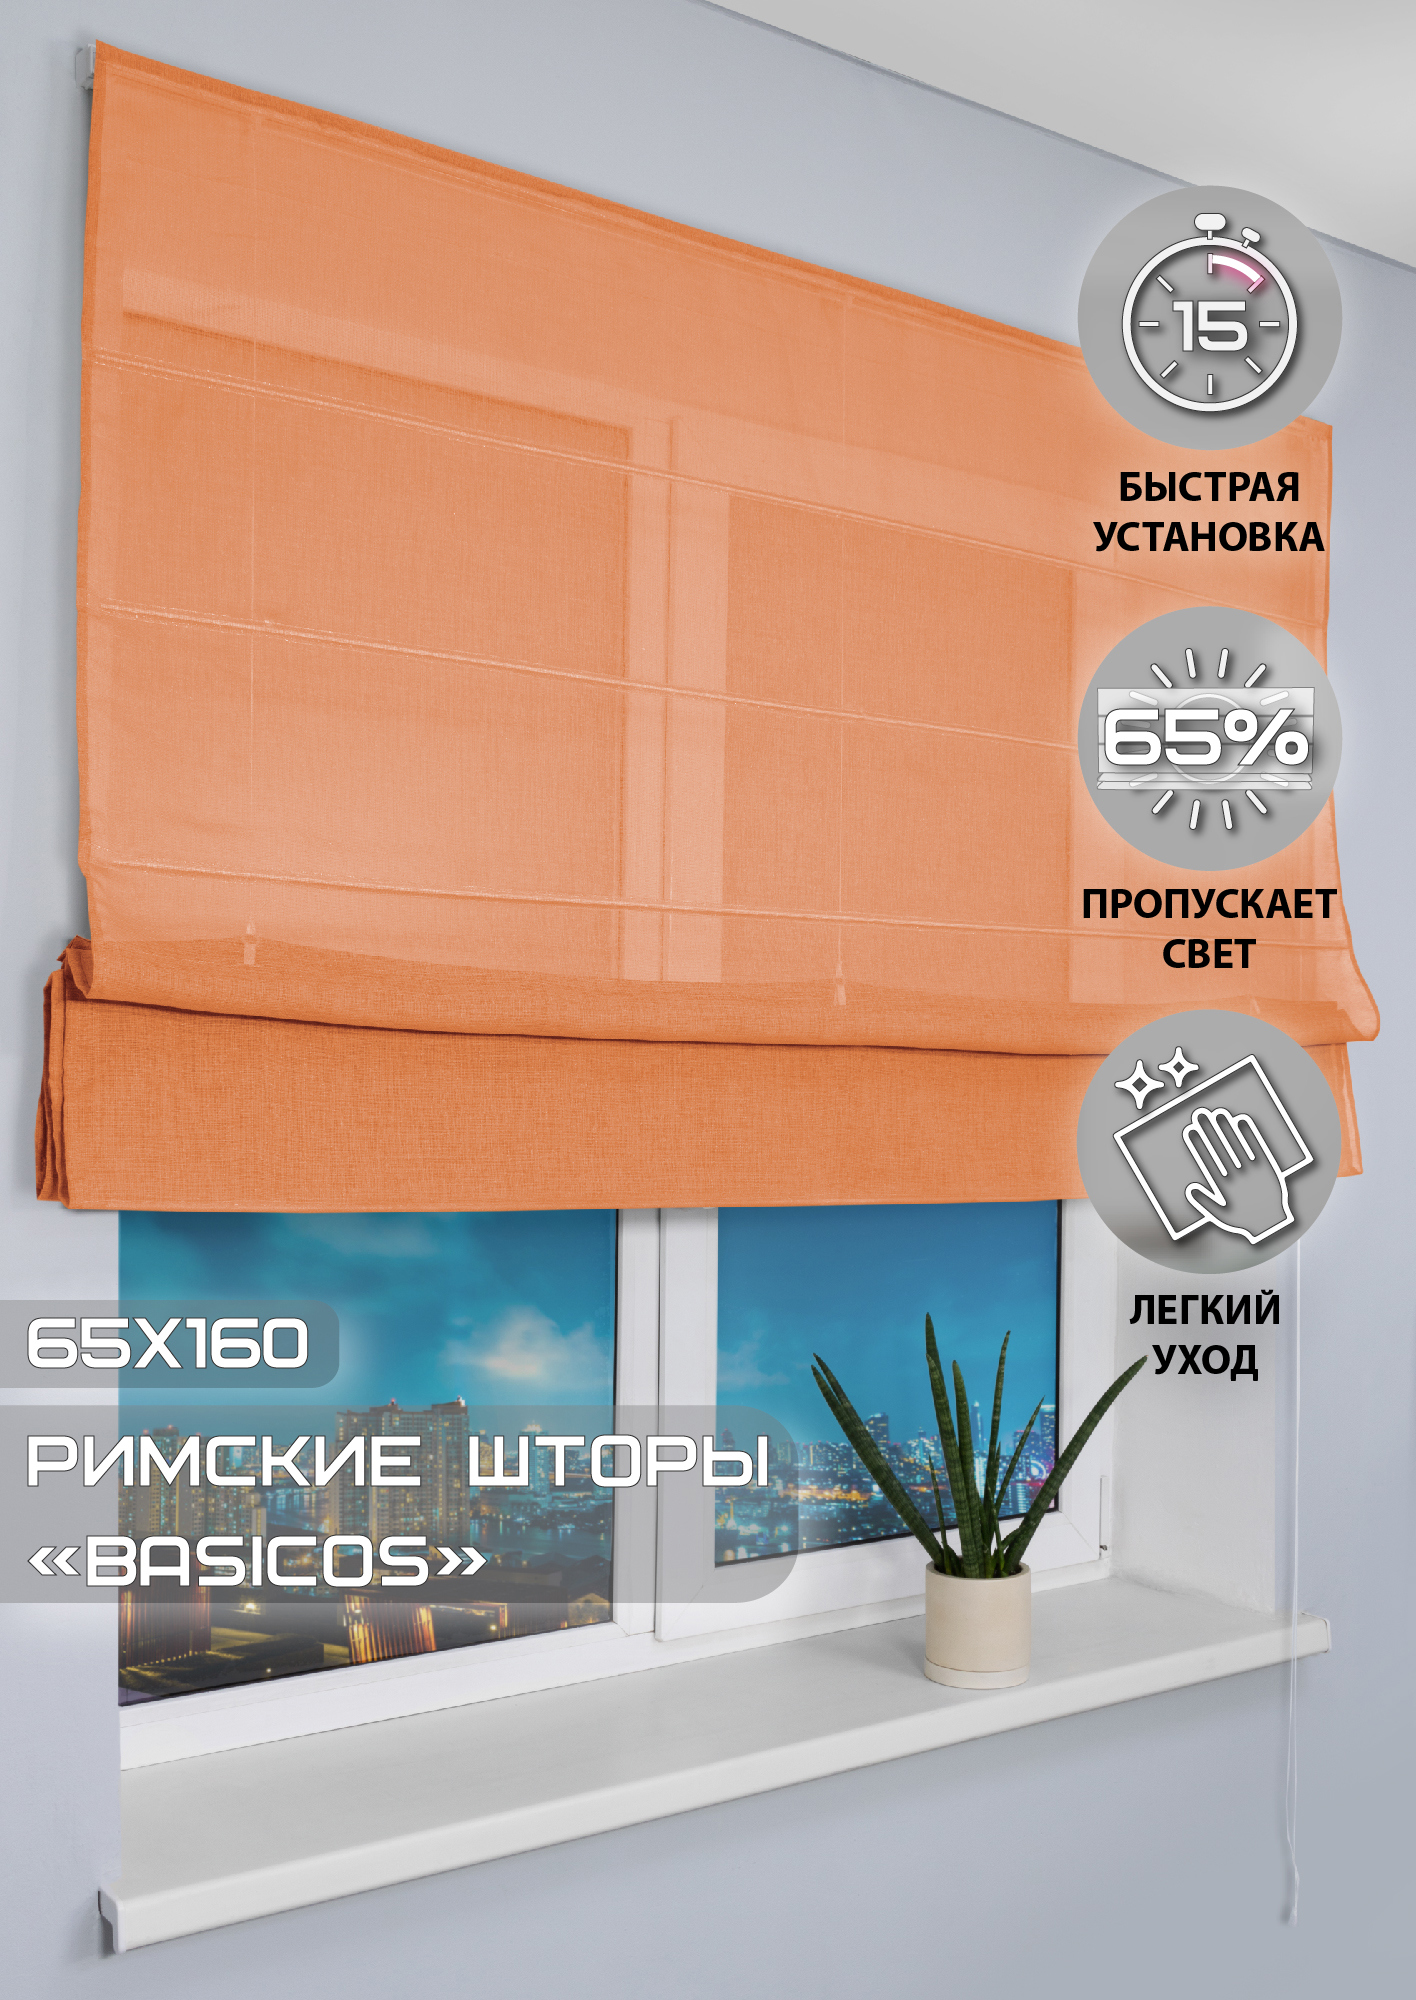 91002965 Римская штора "Basicos" 160x65 см цвет оранжевый STLM-0434234 ЭСКАР